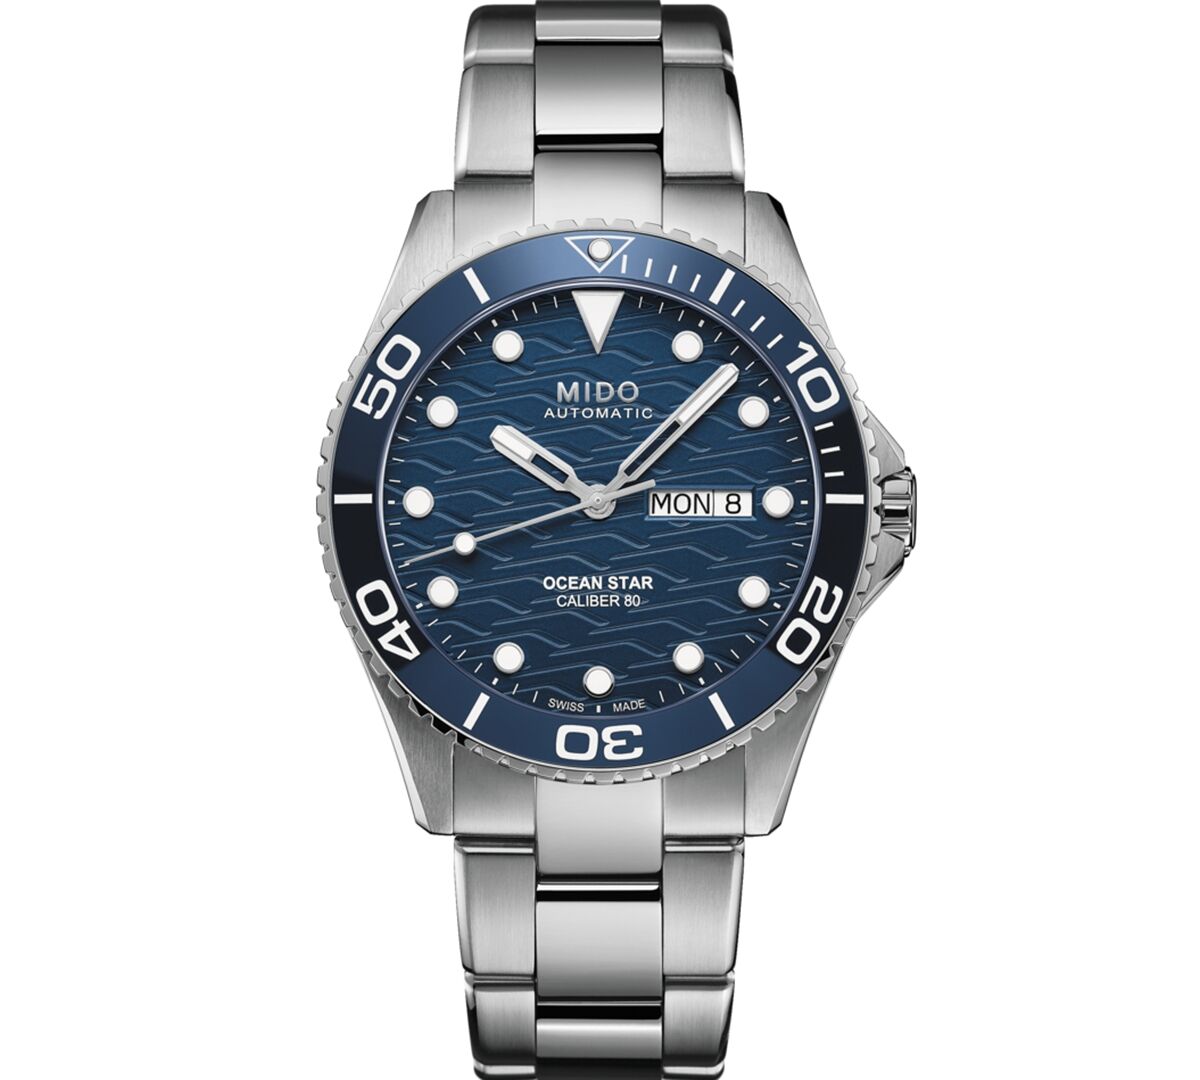 Mido Men's Swiss Automatic Ocean Star Stainless Steel Bracelet Watch 43mm - Silver